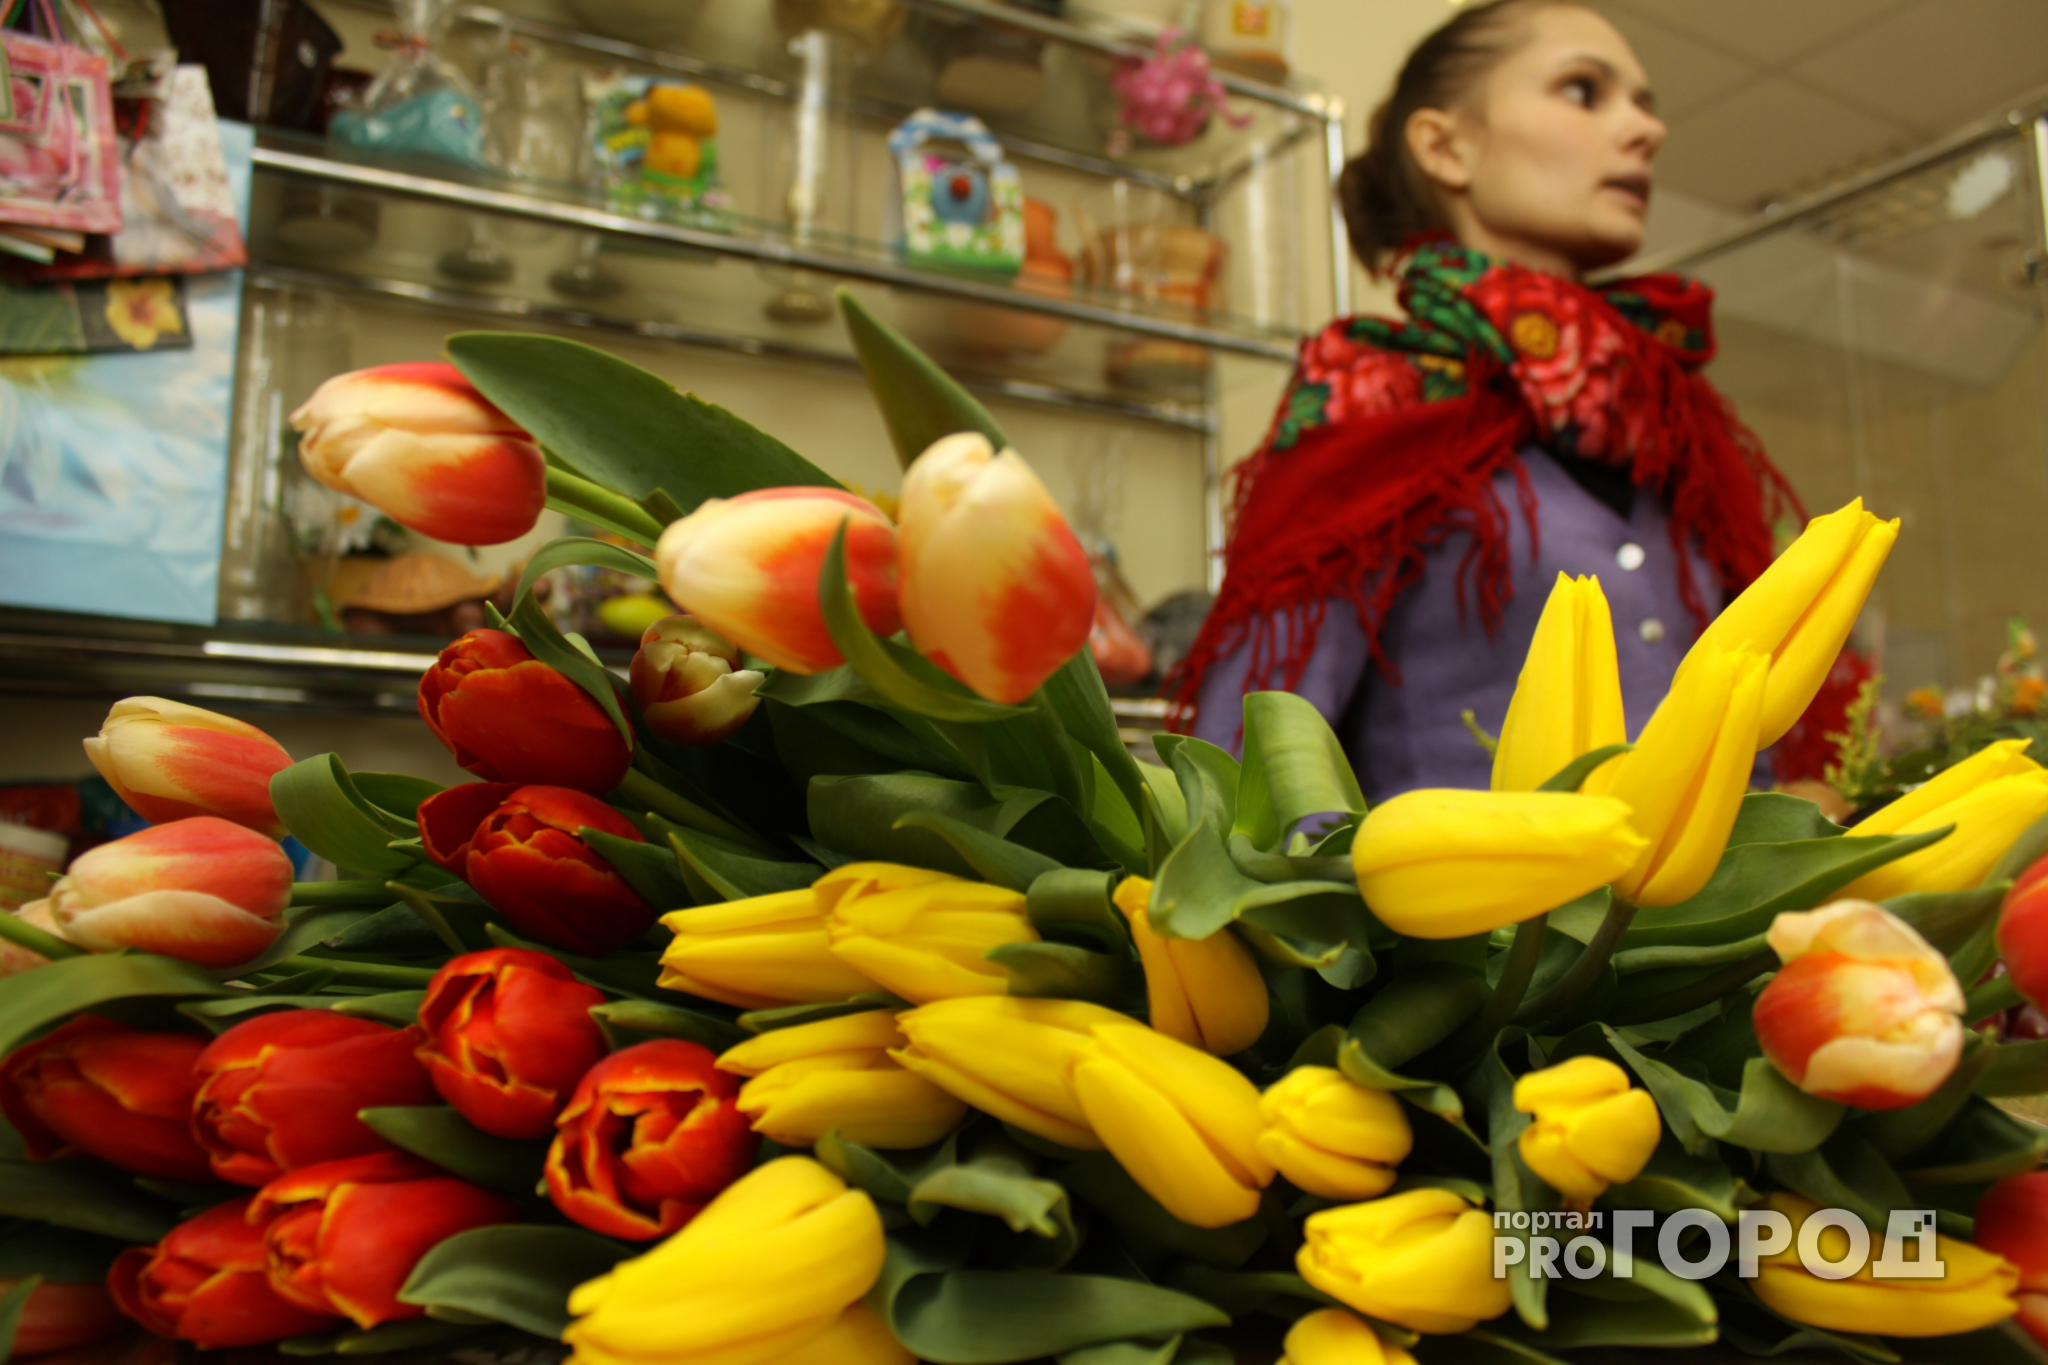 Более десяти миллионов будут стоить Нижнему цветники из тюльпанов